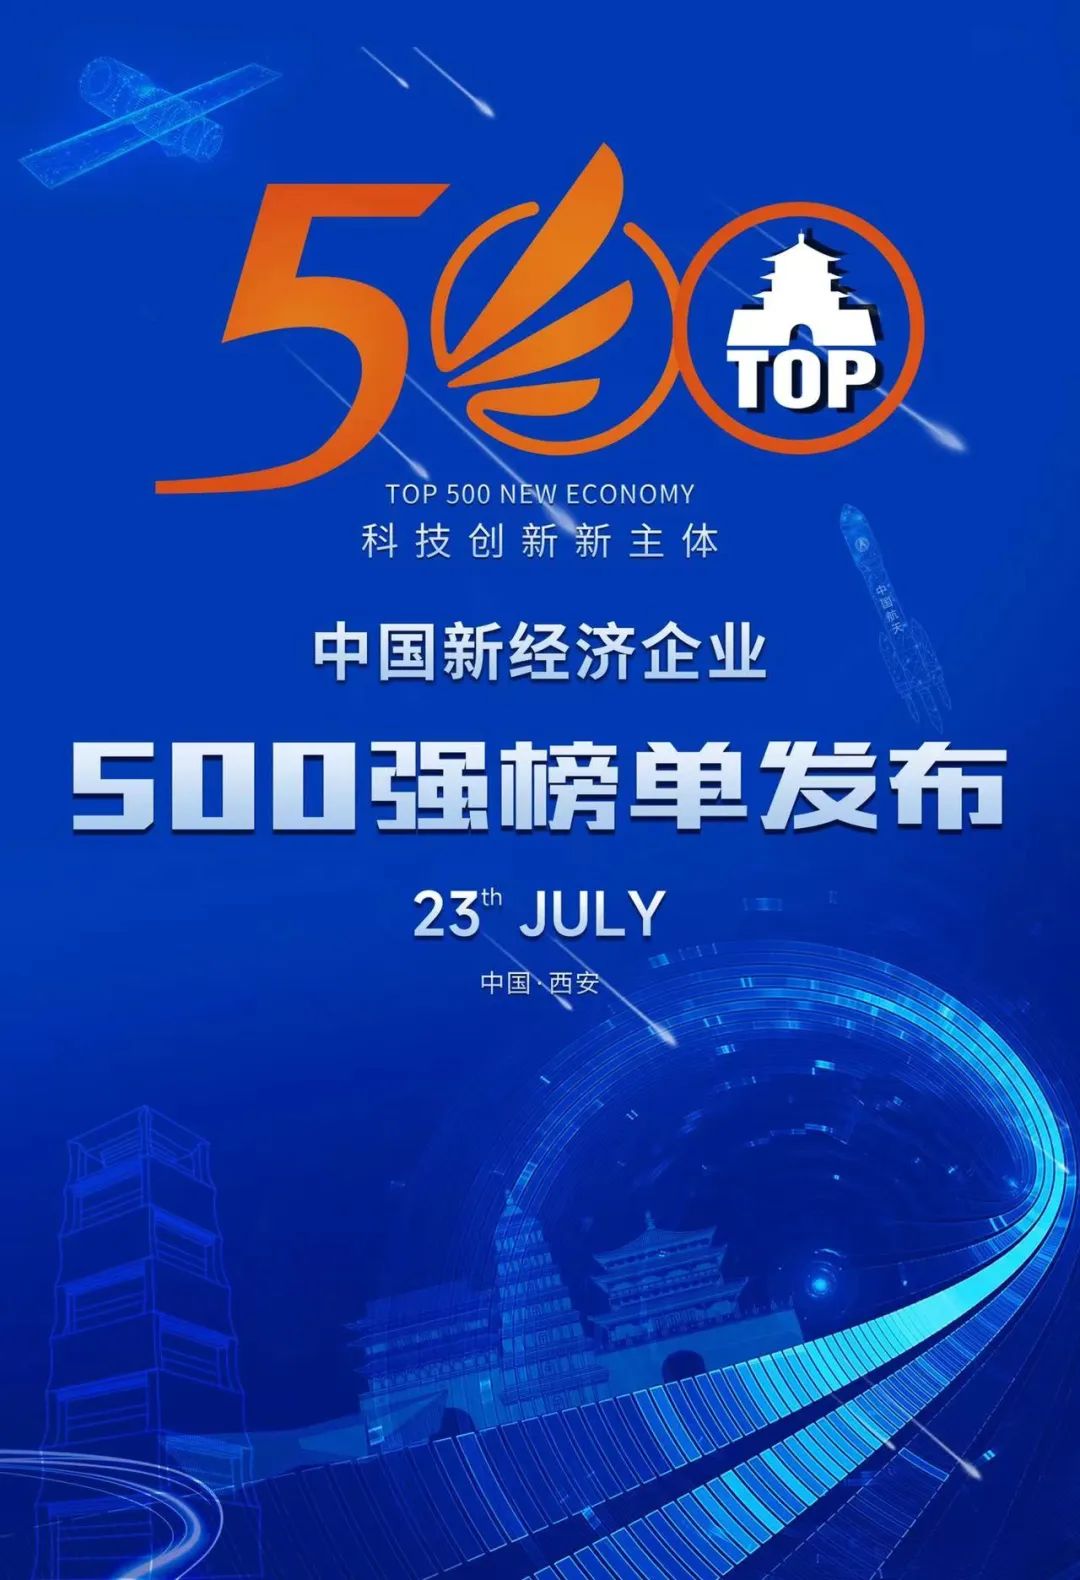 大族激光再登中国新经济企业500强榜单